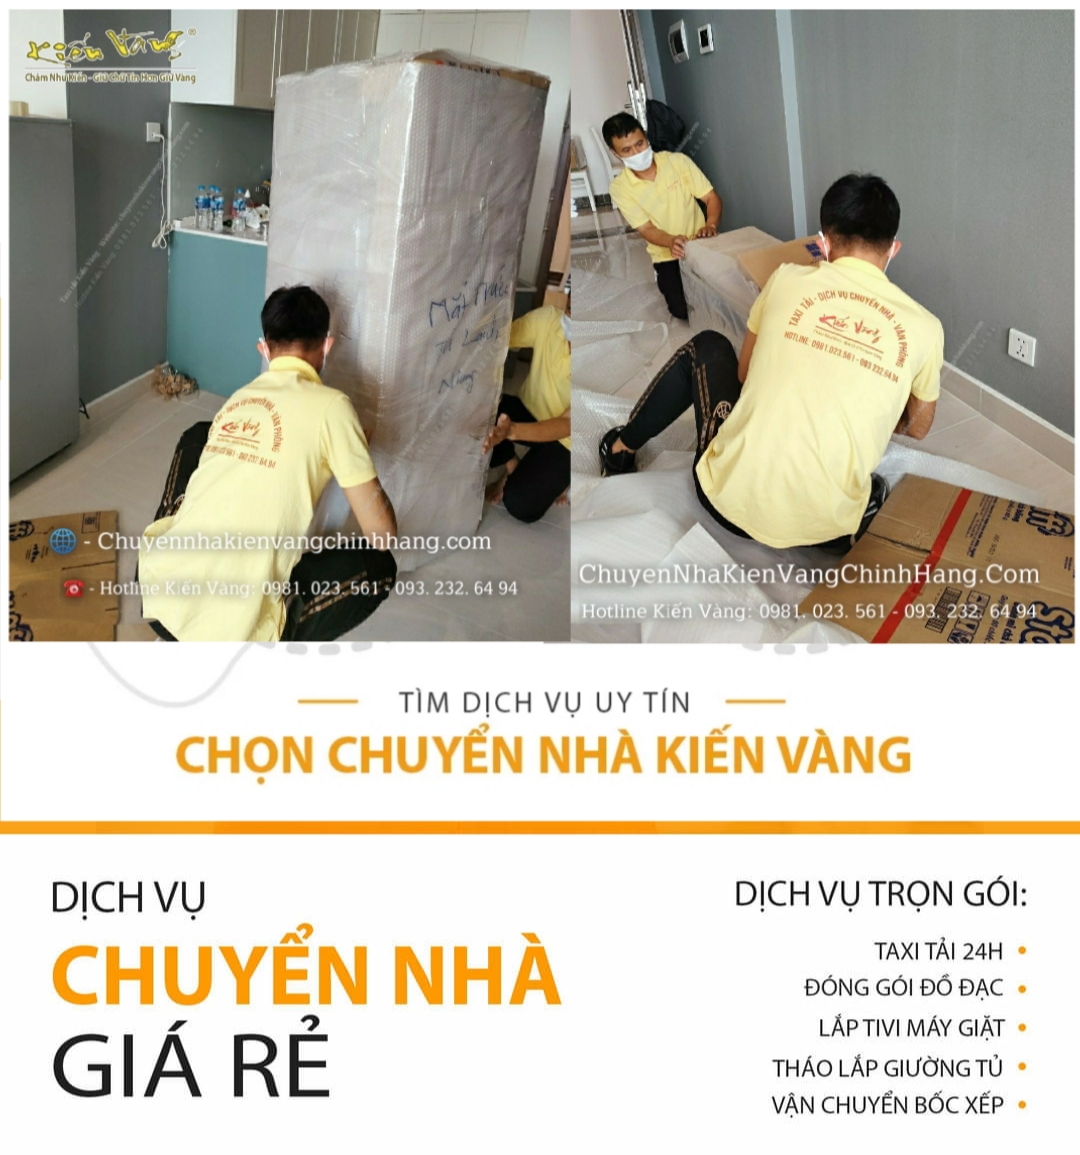 Dịch vụ chuyển nhà chuyên nghiệp Hà Nội trọn gói giá rẻ Kiến Vàng